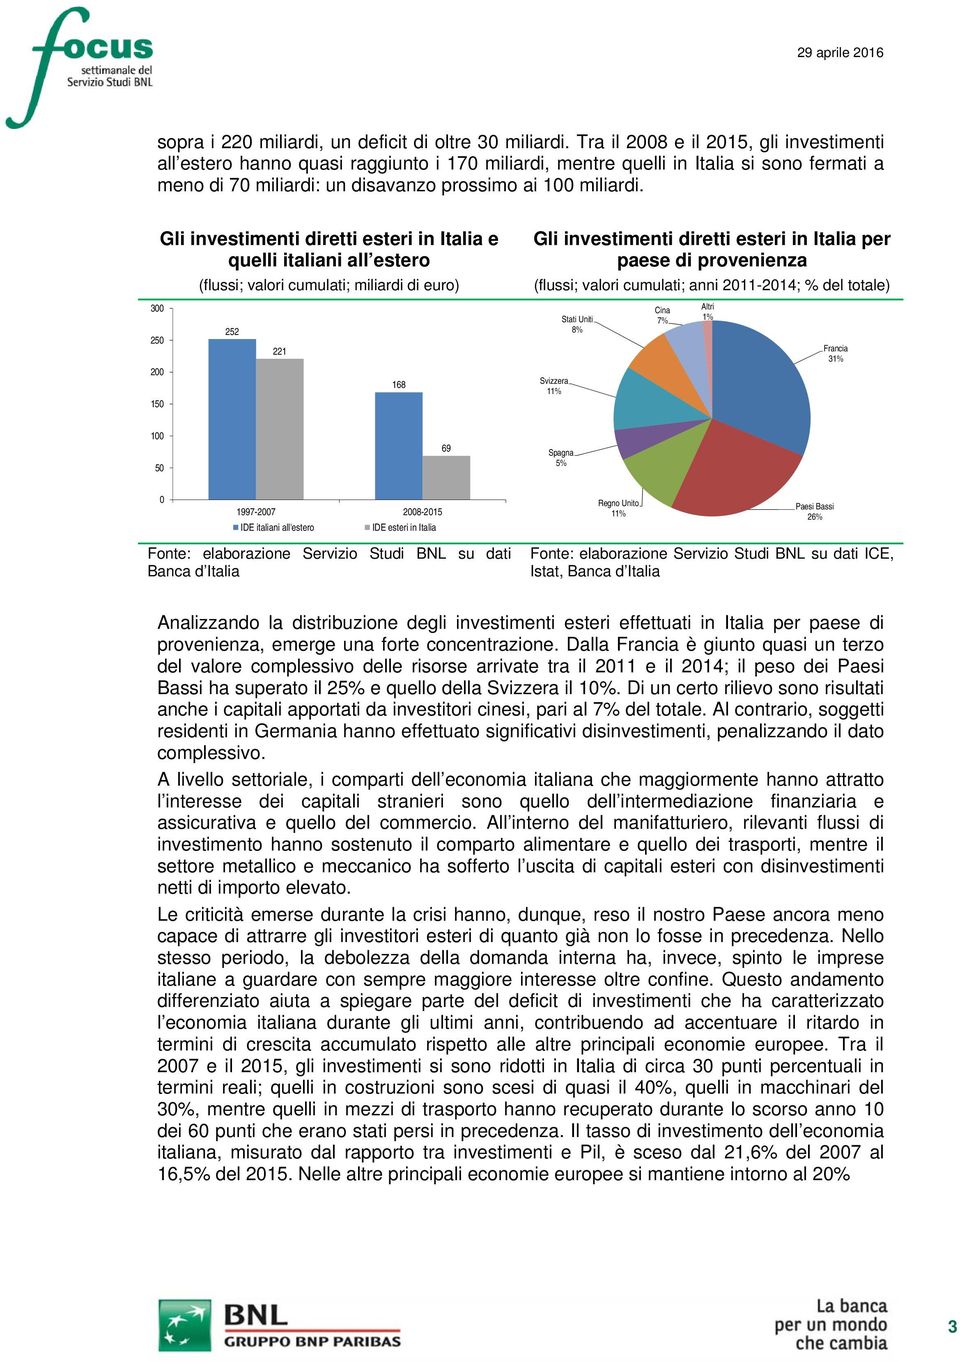 Gli investimenti diretti esteri in Italia e quelli italiani all estero (flussi; valori cumulati; miliardi di euro) 3 25 2 15 252 221 168 Gli investimenti diretti esteri in Italia per paese di